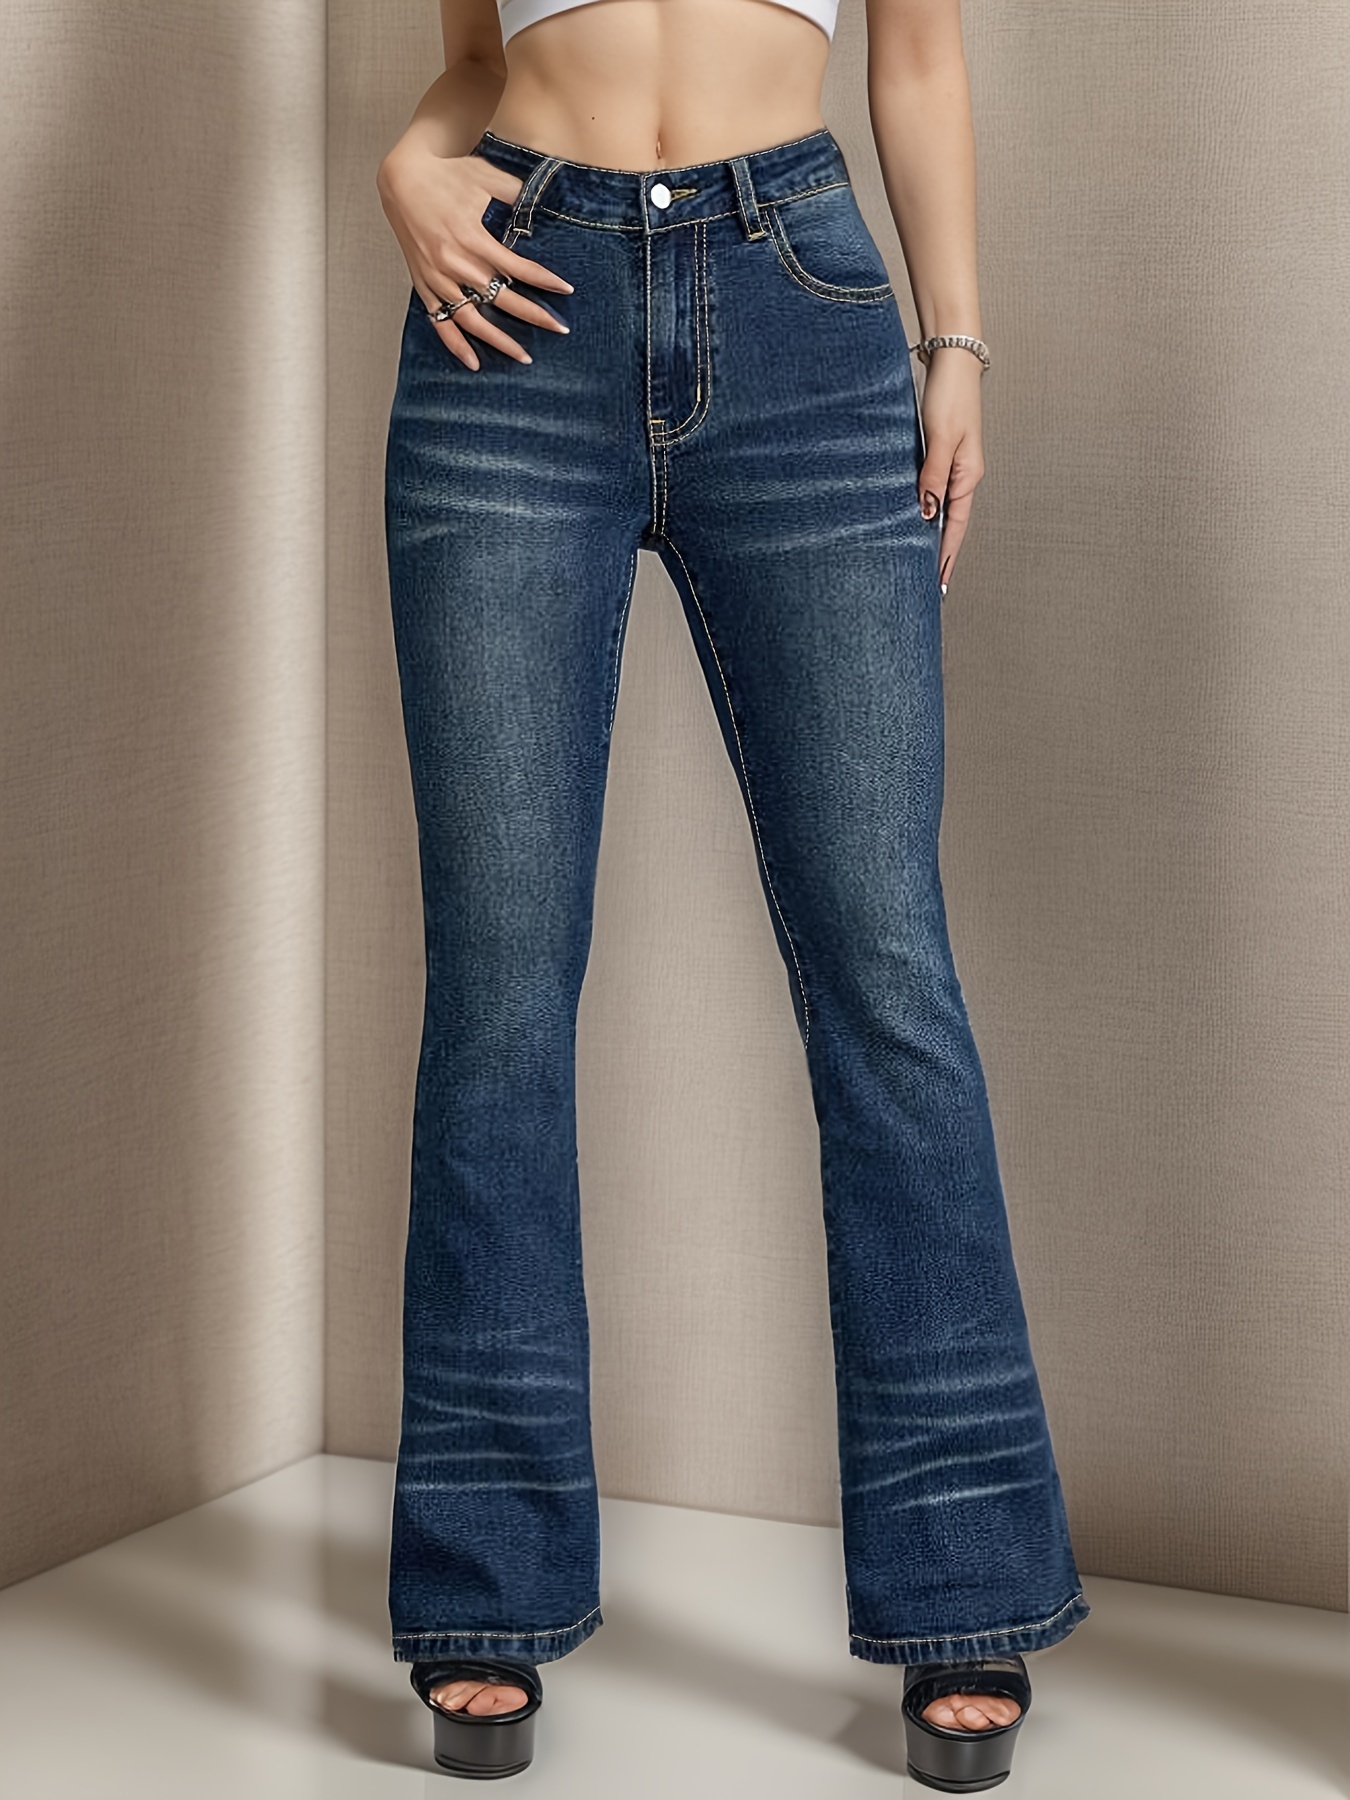  Mguotp Lindos jeans para mujer, pantalones de